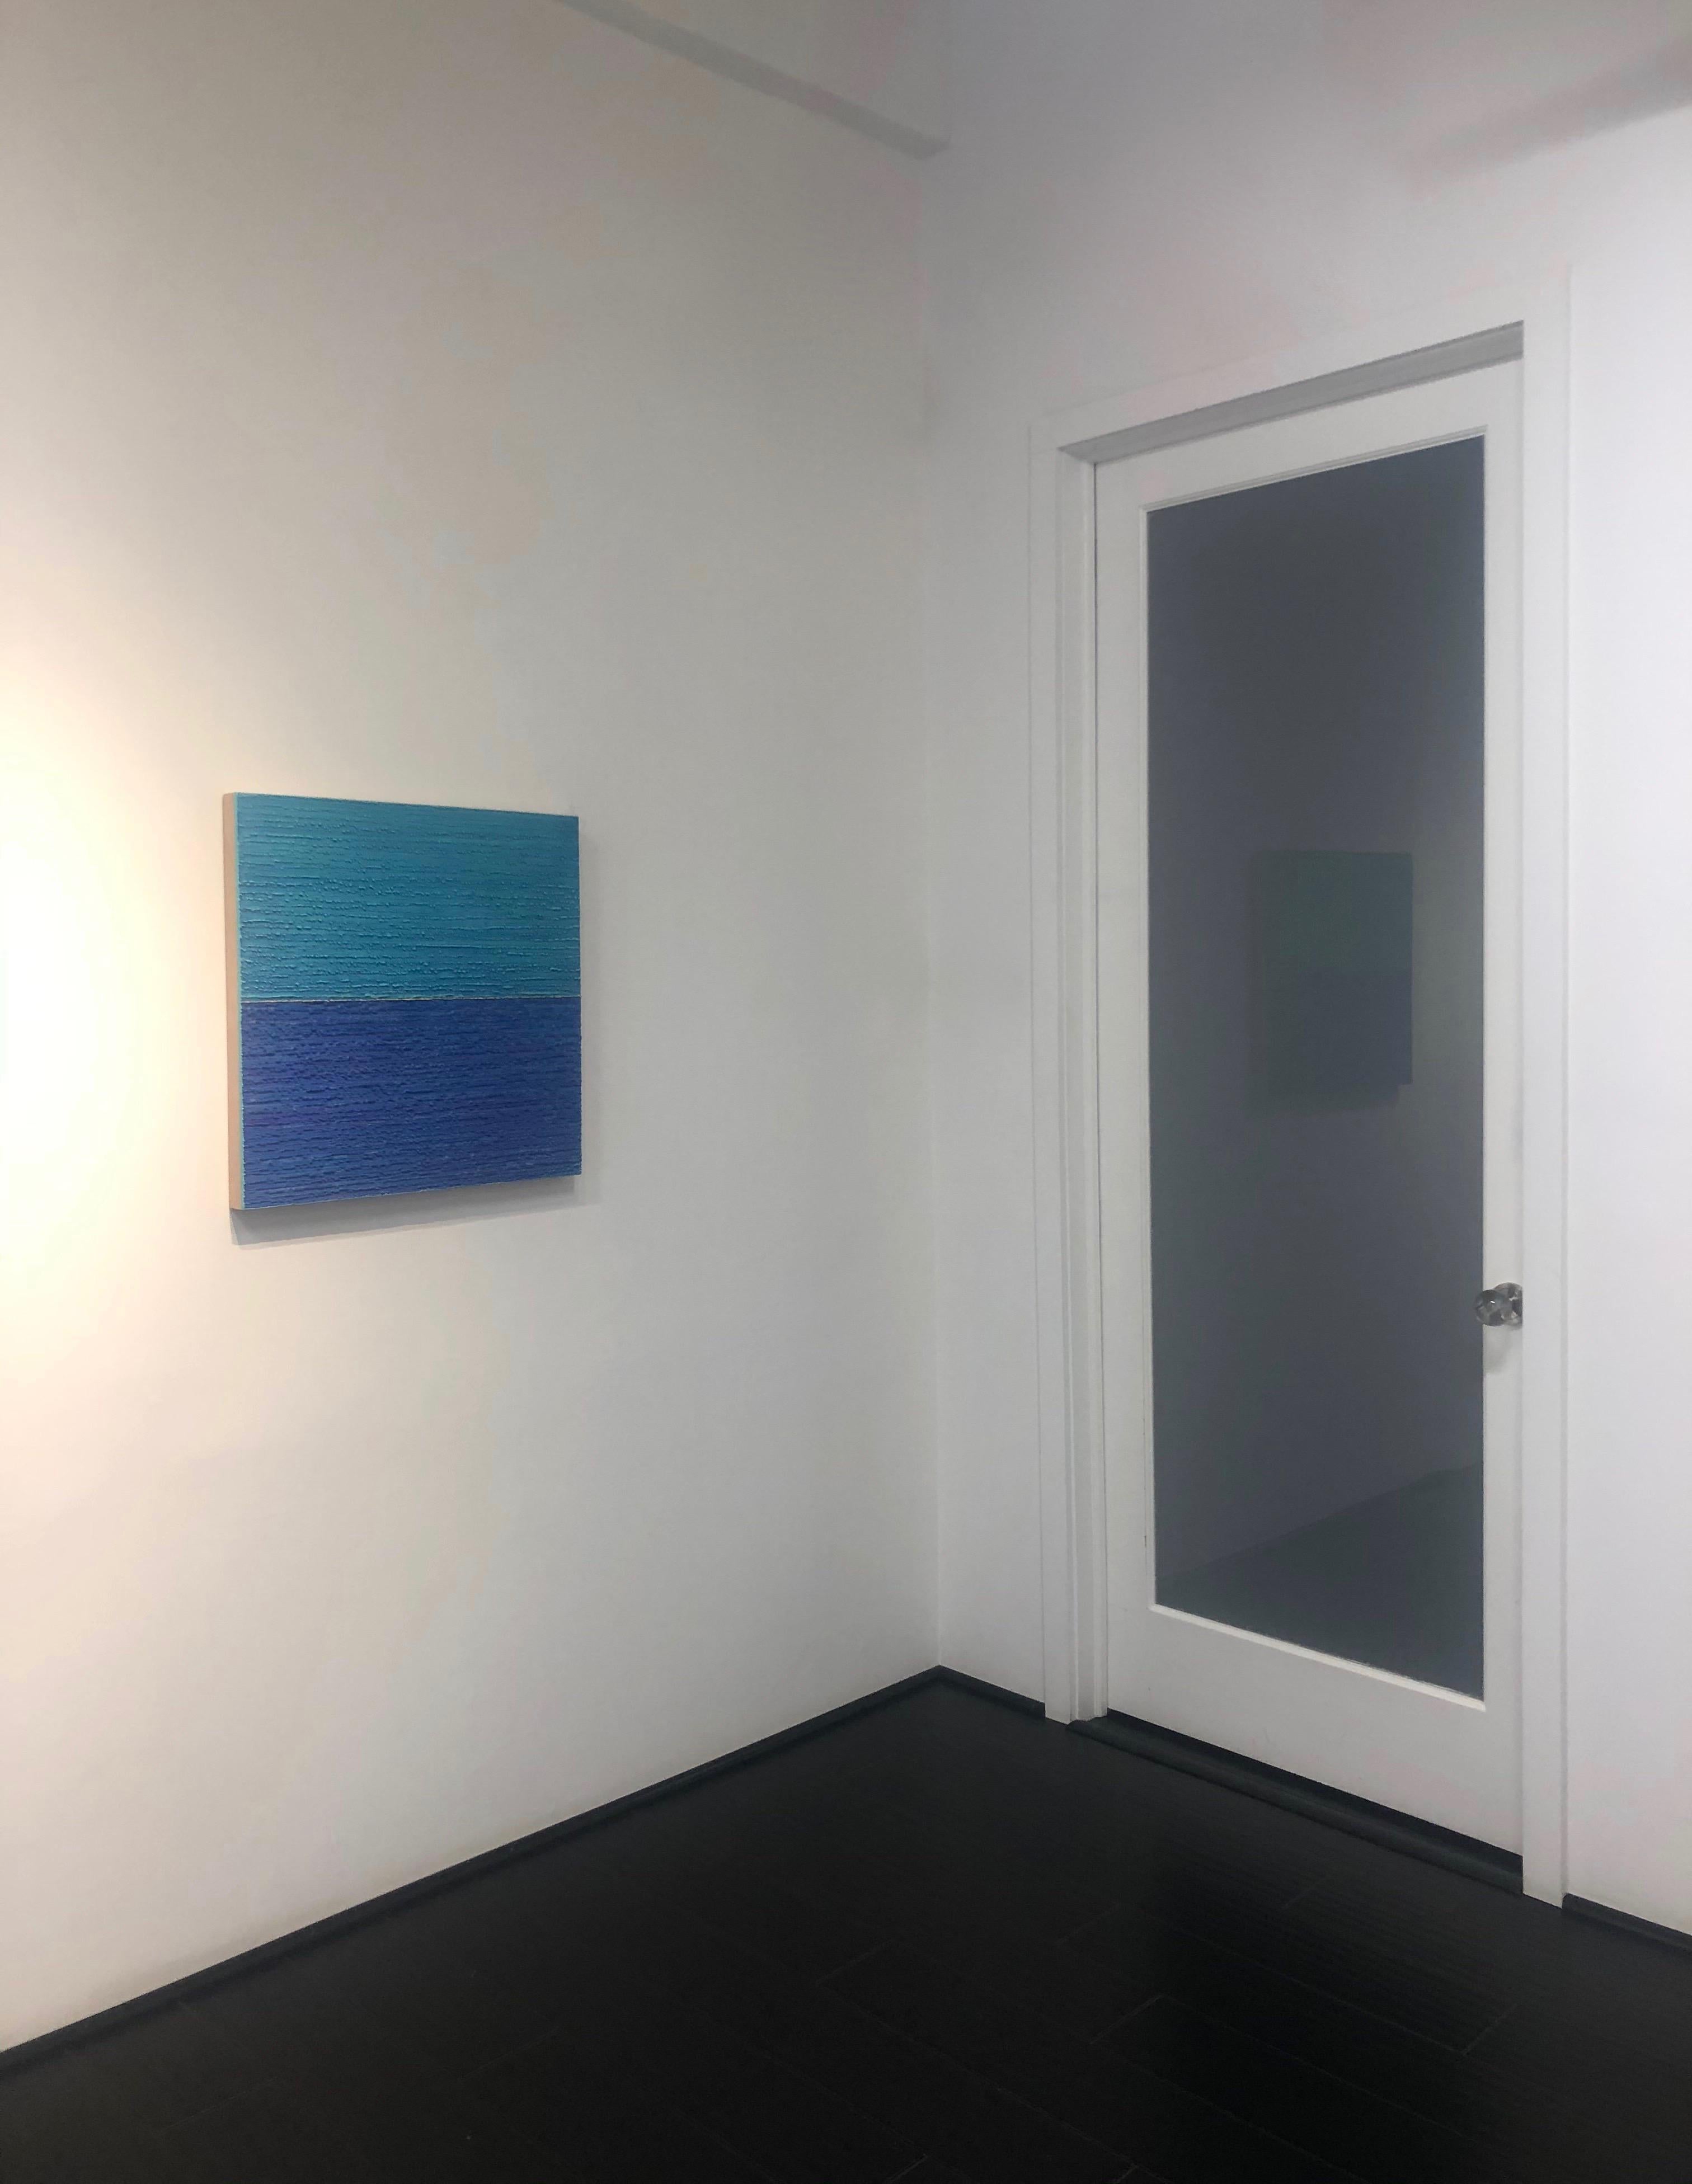 Seidenstraße 442, Kobaltblau, helles elektrisches Teal, quadratische Farbfeld-Enkaustik (Zeitgenössisch), Painting, von Joanne Mattera